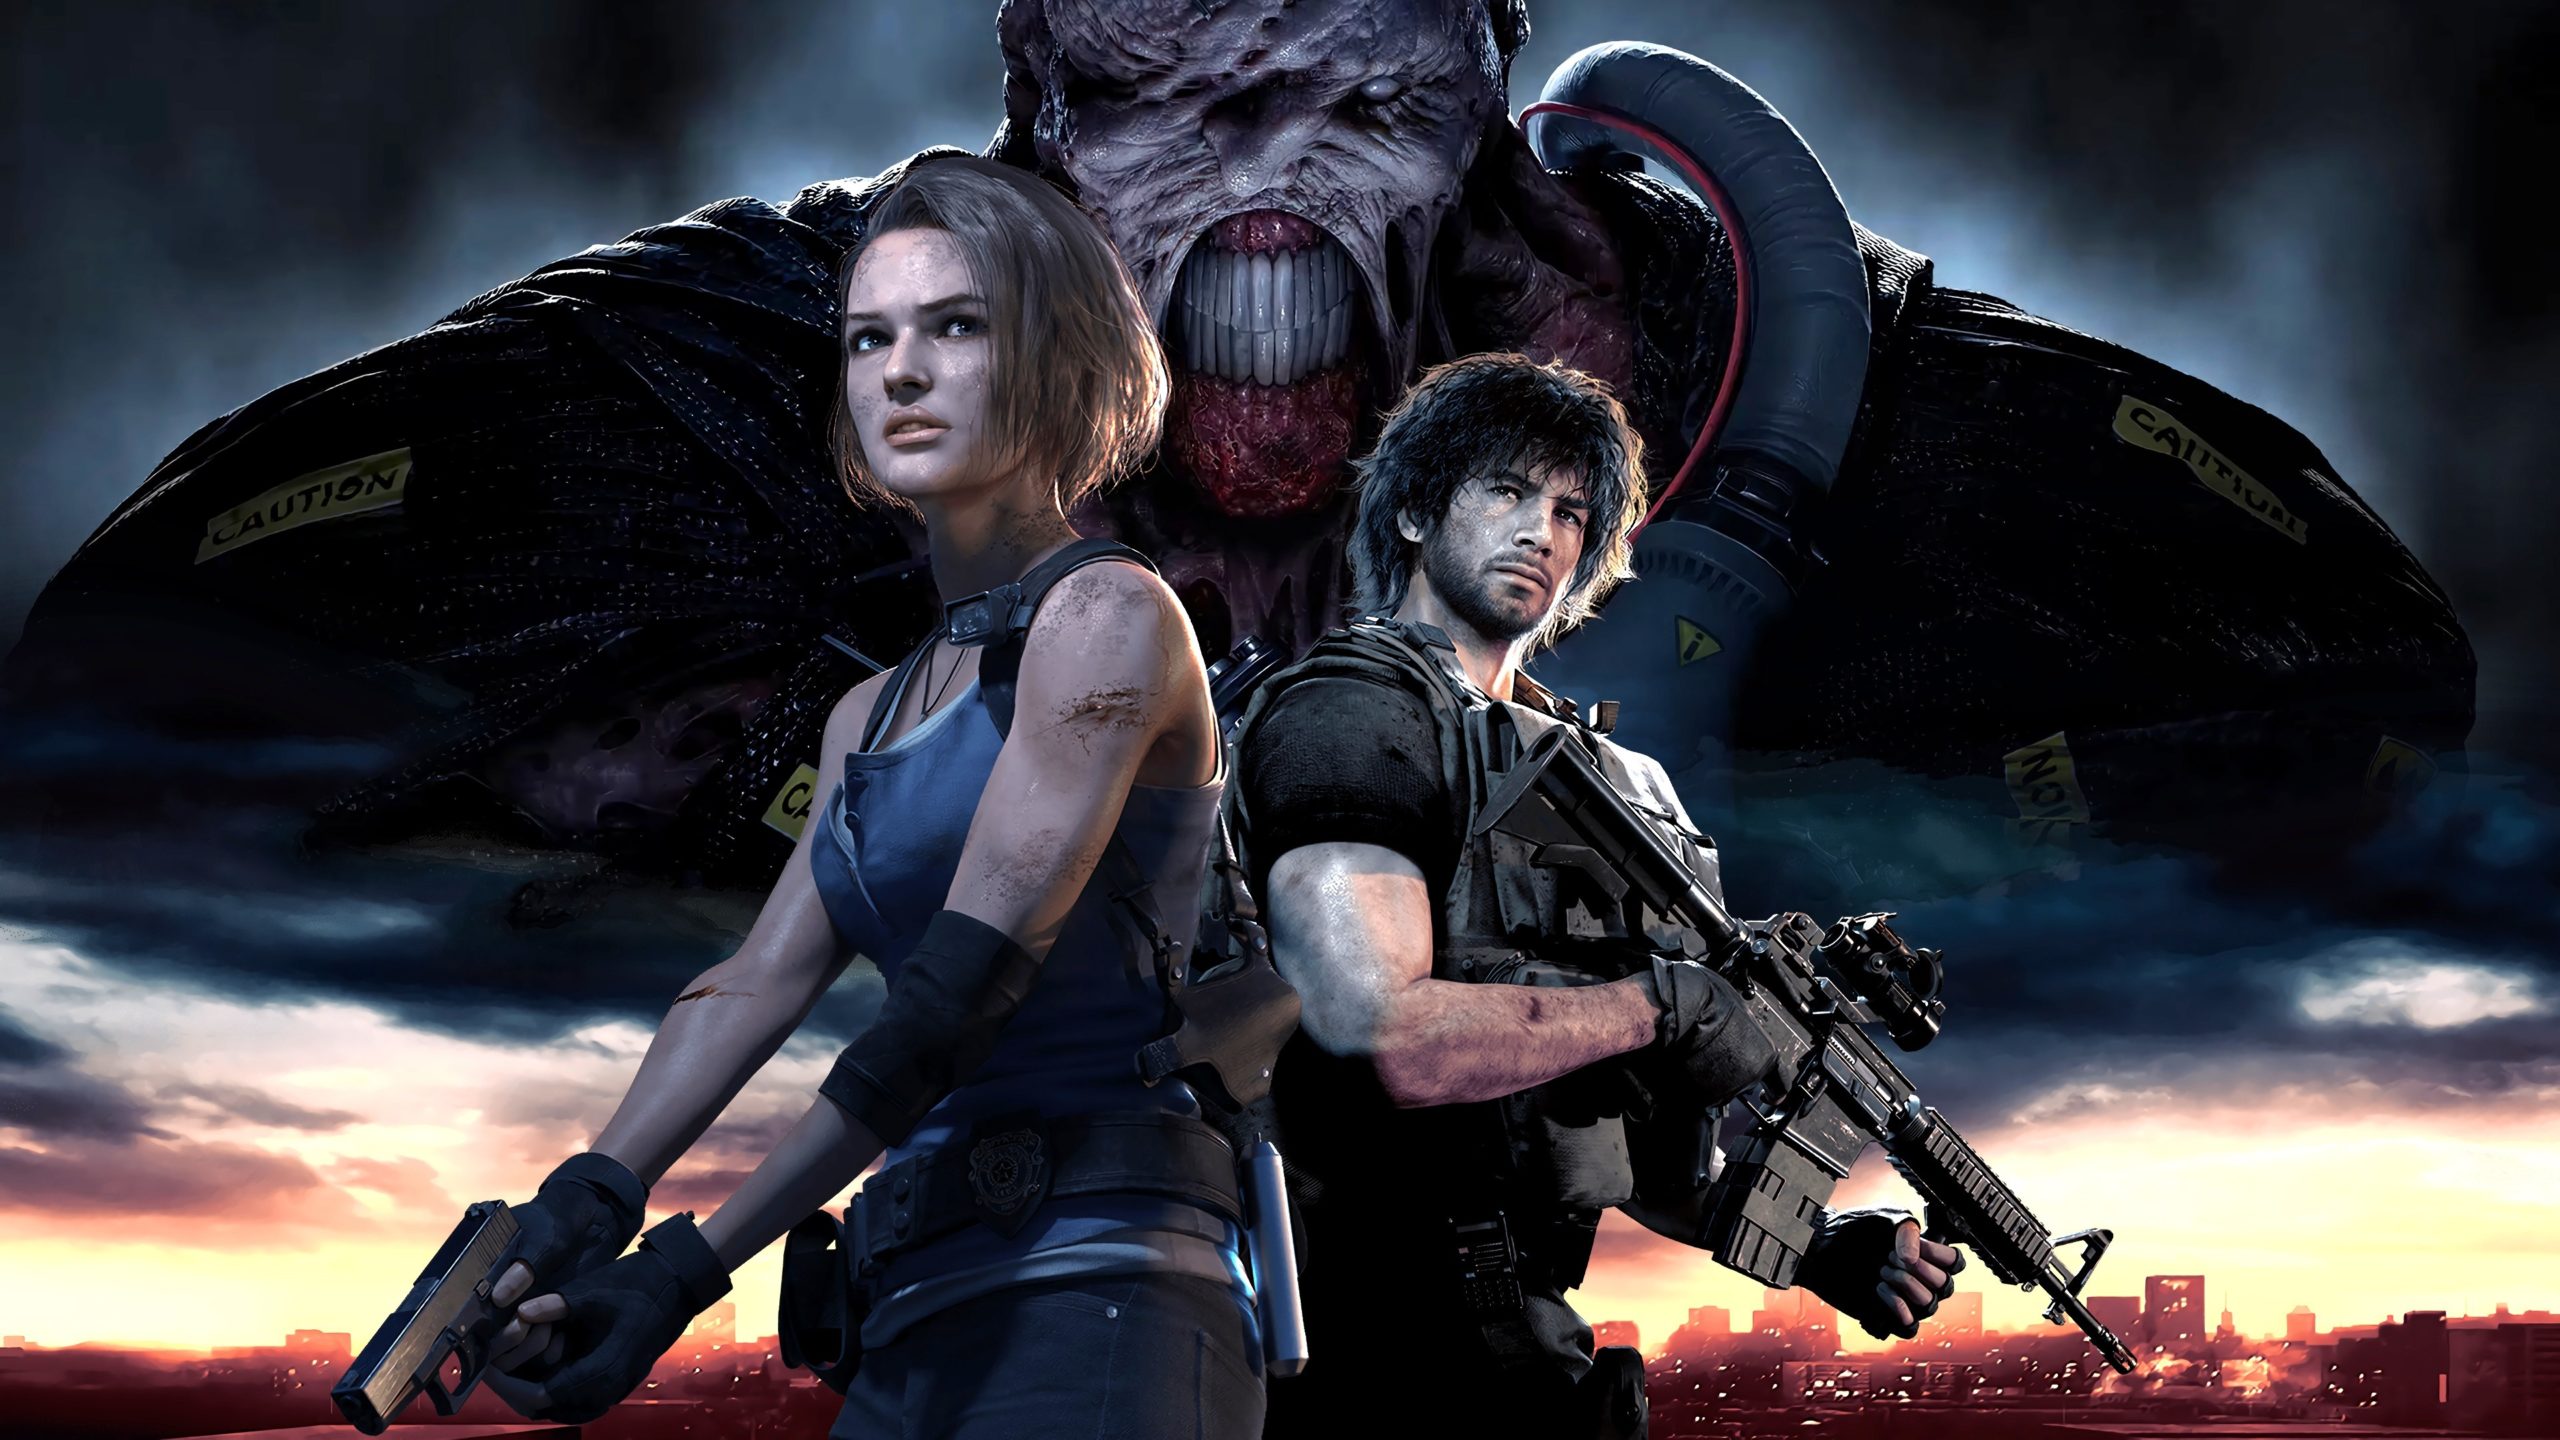 بازی Resident Evil 3 Demo  در تاریخ 19 مارس منتشر میشود ،و هفته بعد Resistance Beta + تریلر